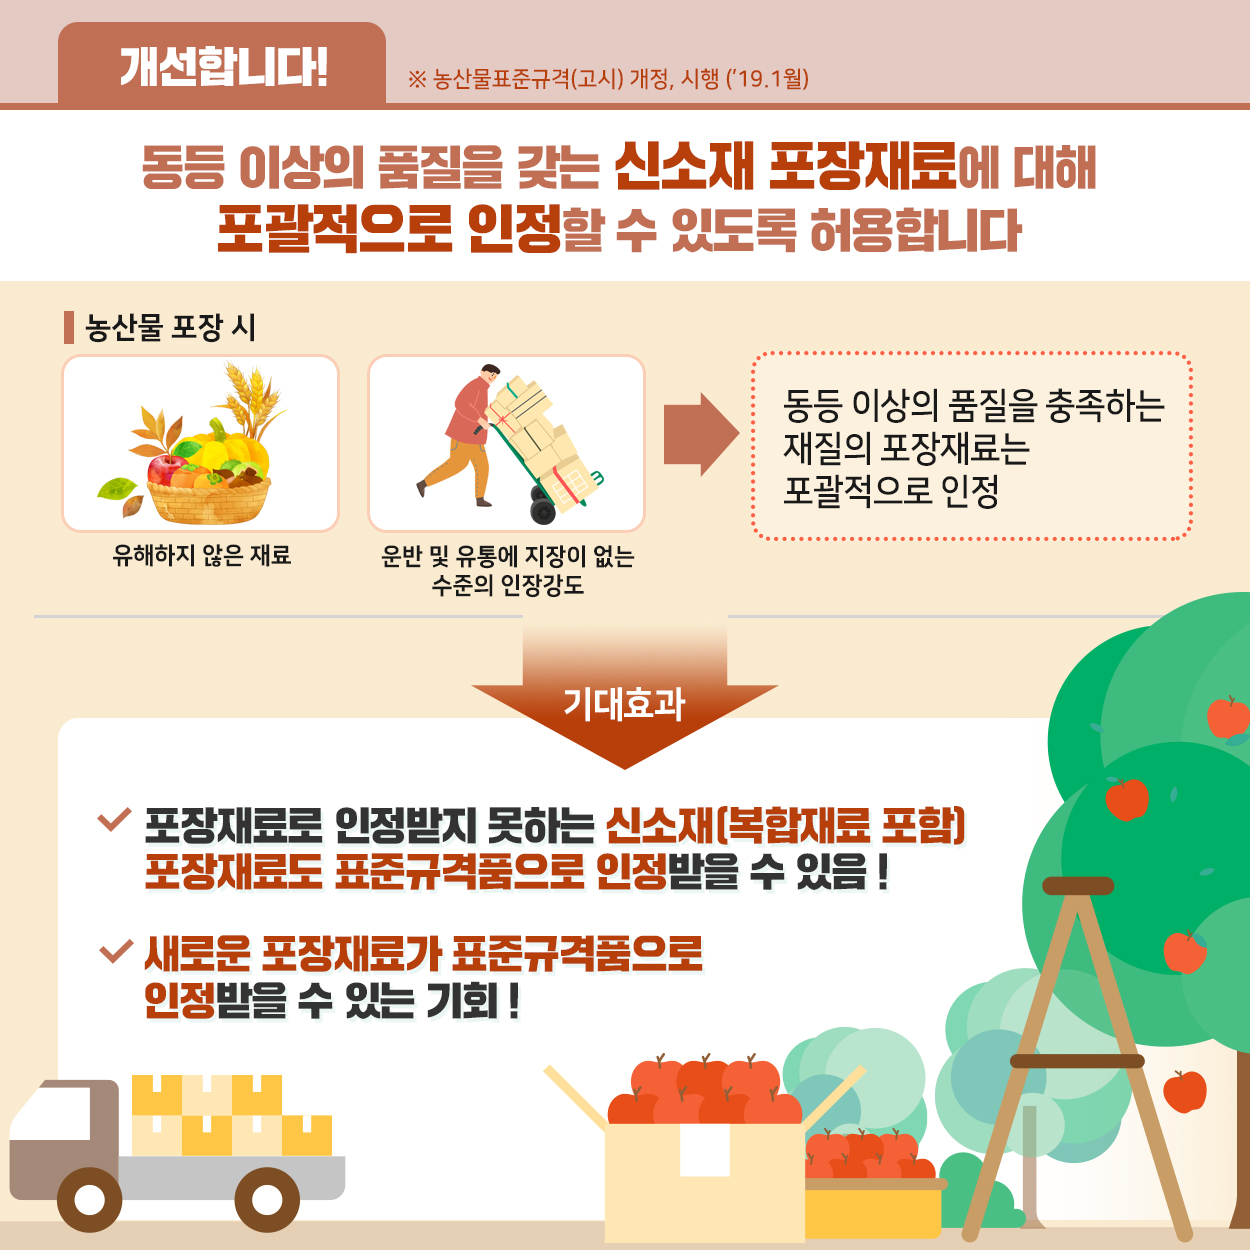 농산물 포장 재료 다양화 - 2019 규제혁신 3 농식품부_카드뉴스_규제혁신3_04.jpg